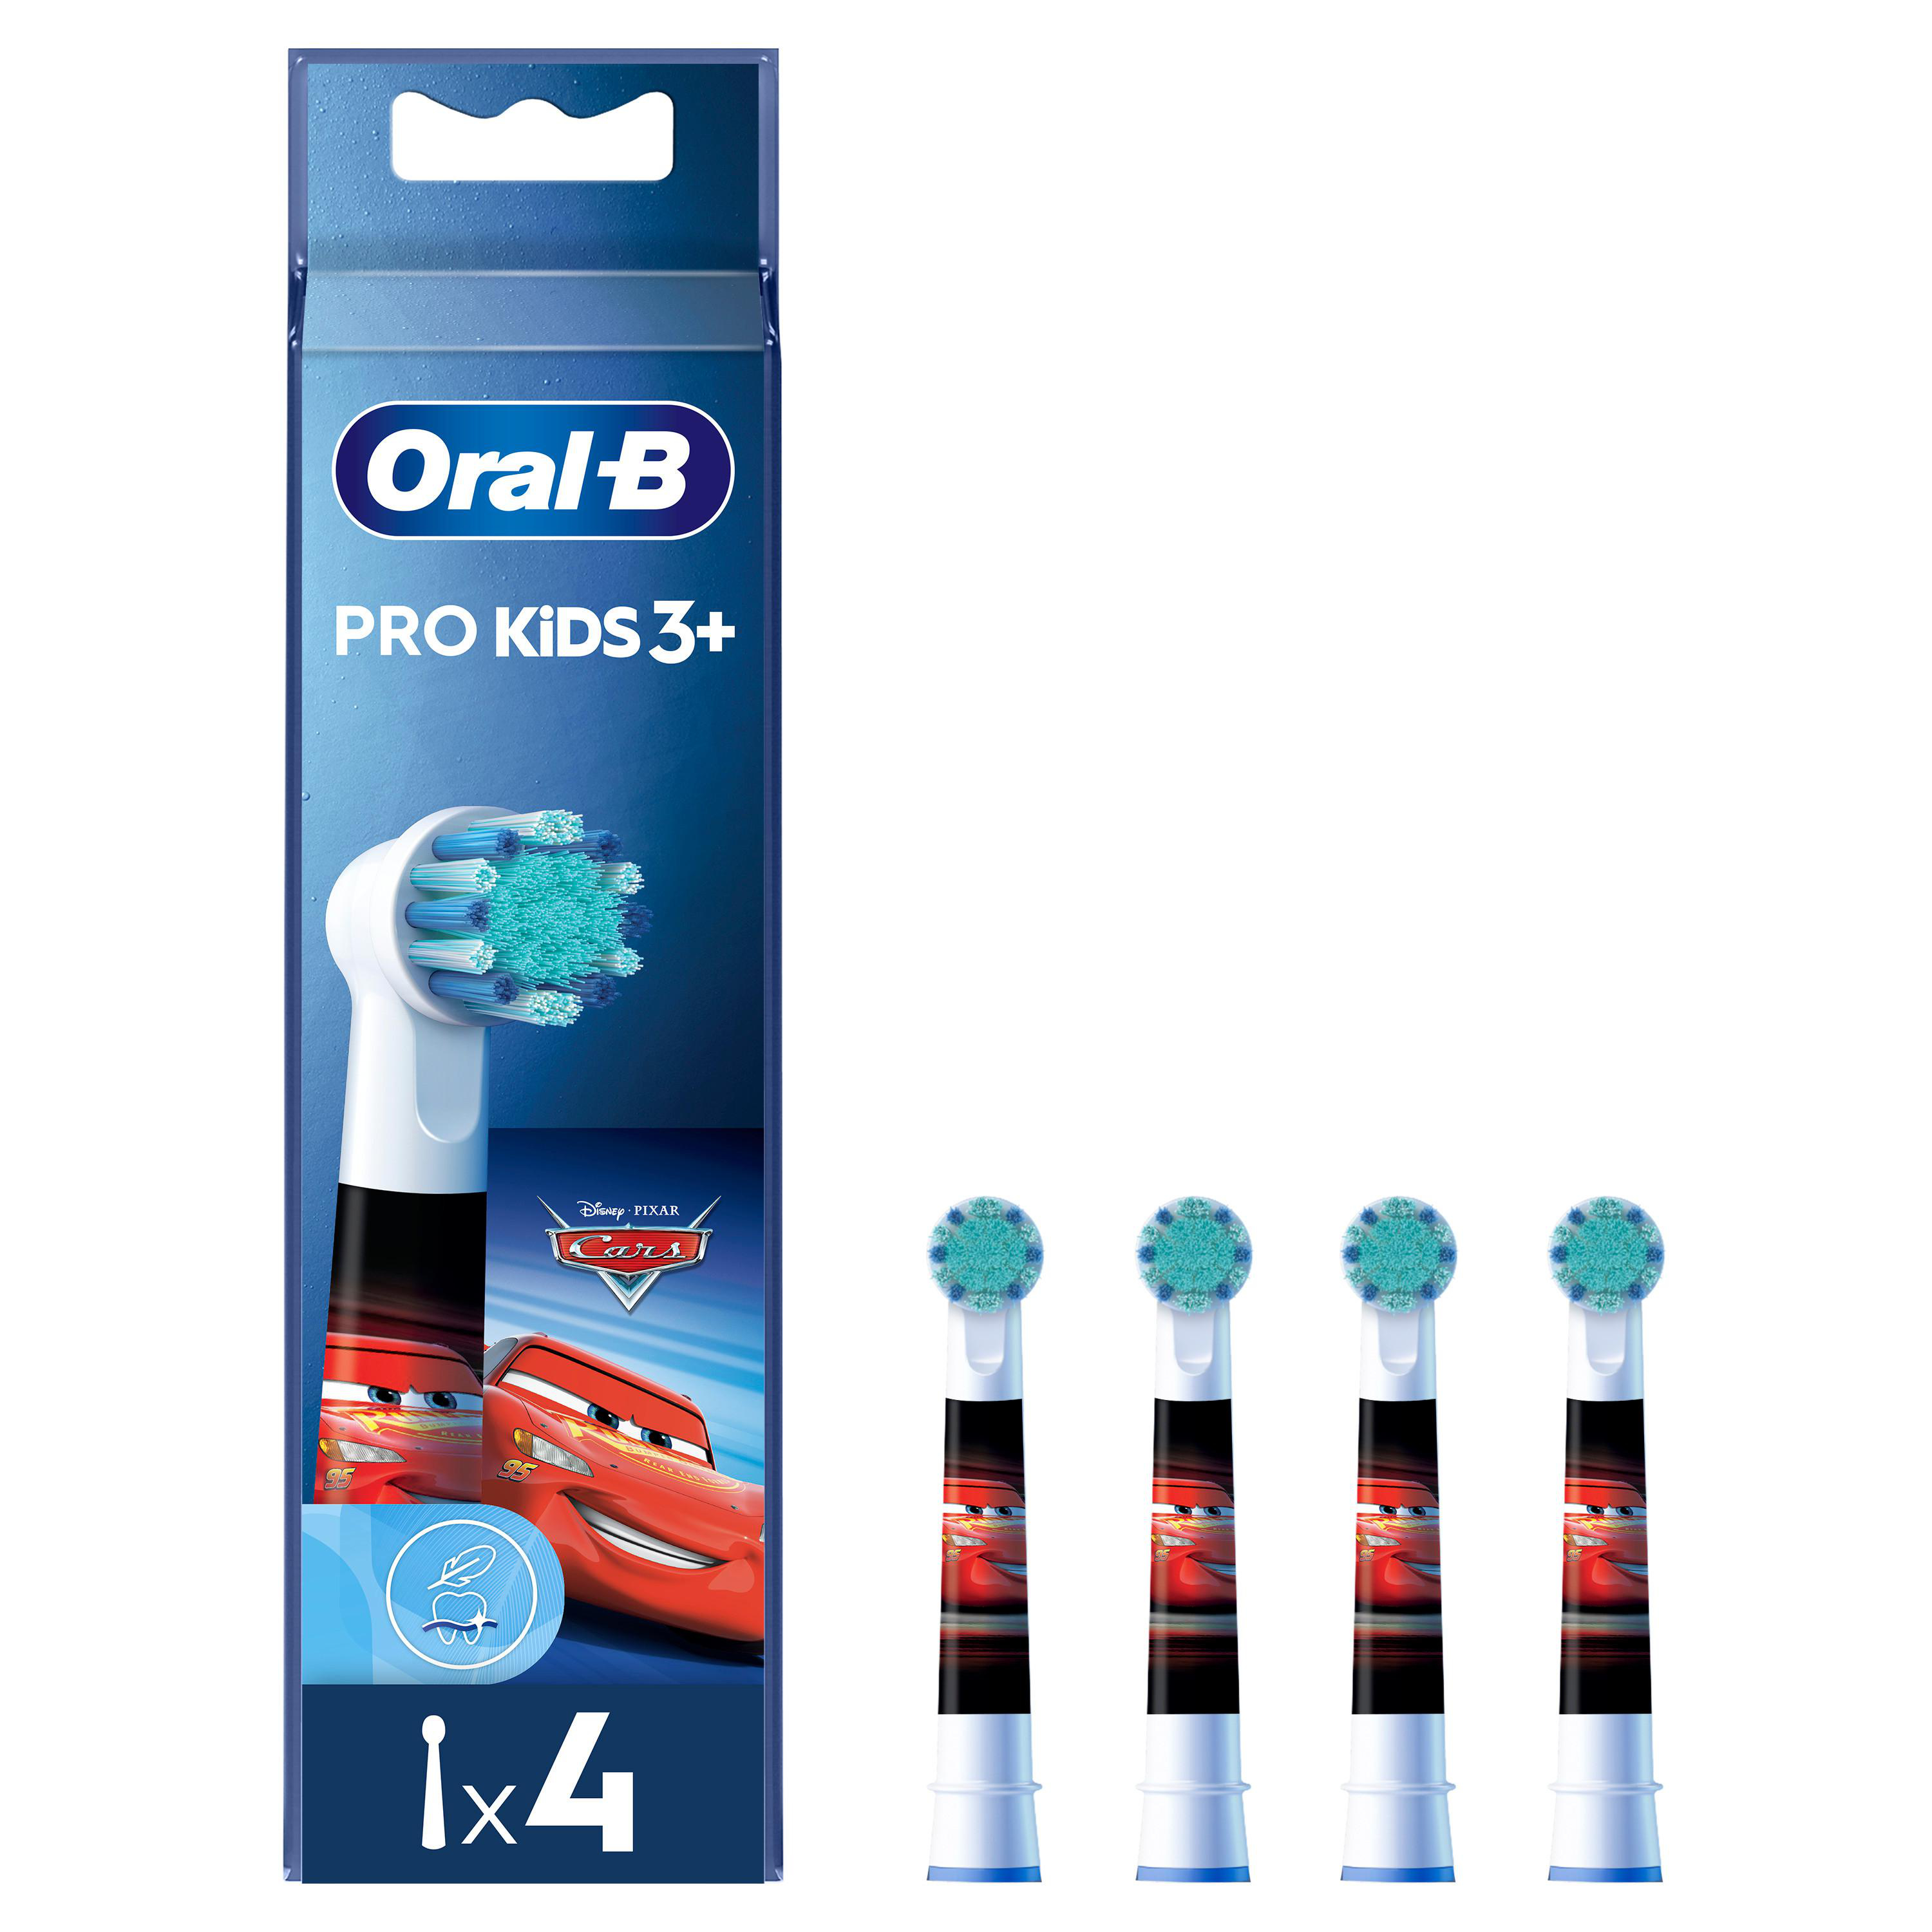 ORAL-B Pro Kids Motiv, 3+ Stück Cars mit Aufsteckbürsten 4 oder Princess